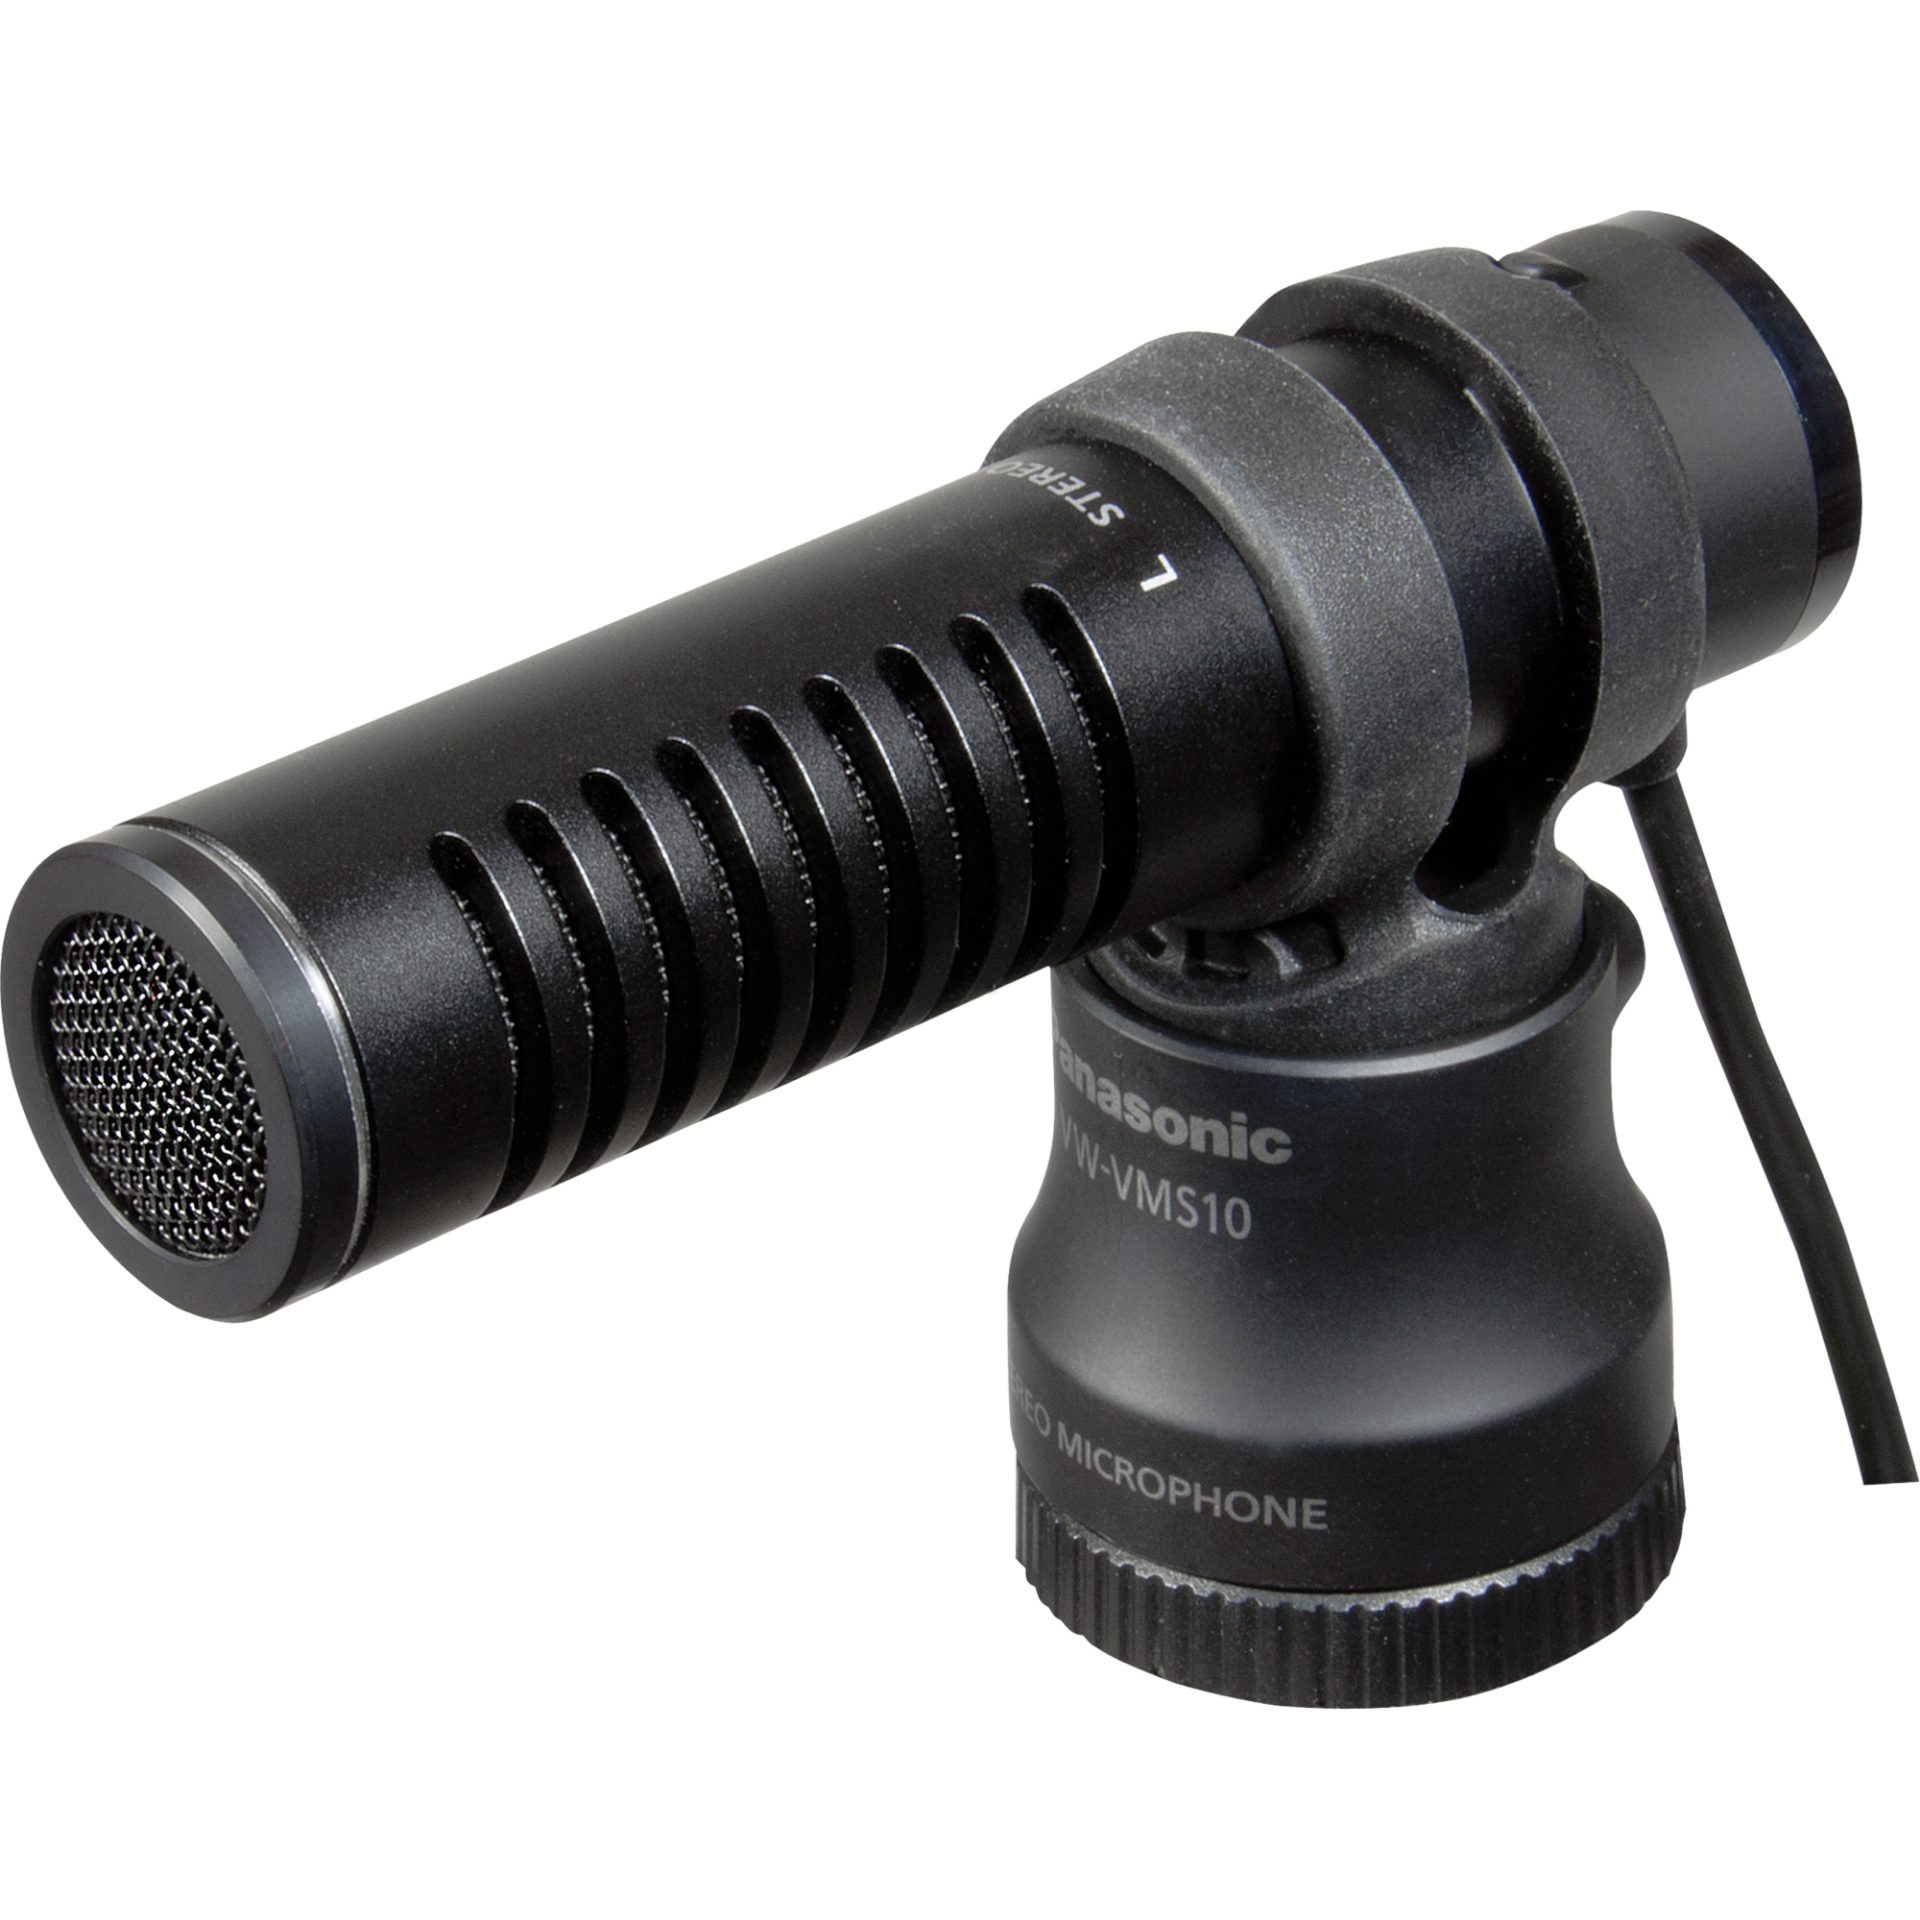 Panasonic VW-VMS10 externí stereofonní mikrofon (3,5mm jack, čelní sklo, kryt, pro HC-X920, X920M, X910, V770K, V720, V720M, V710 kamery), černá